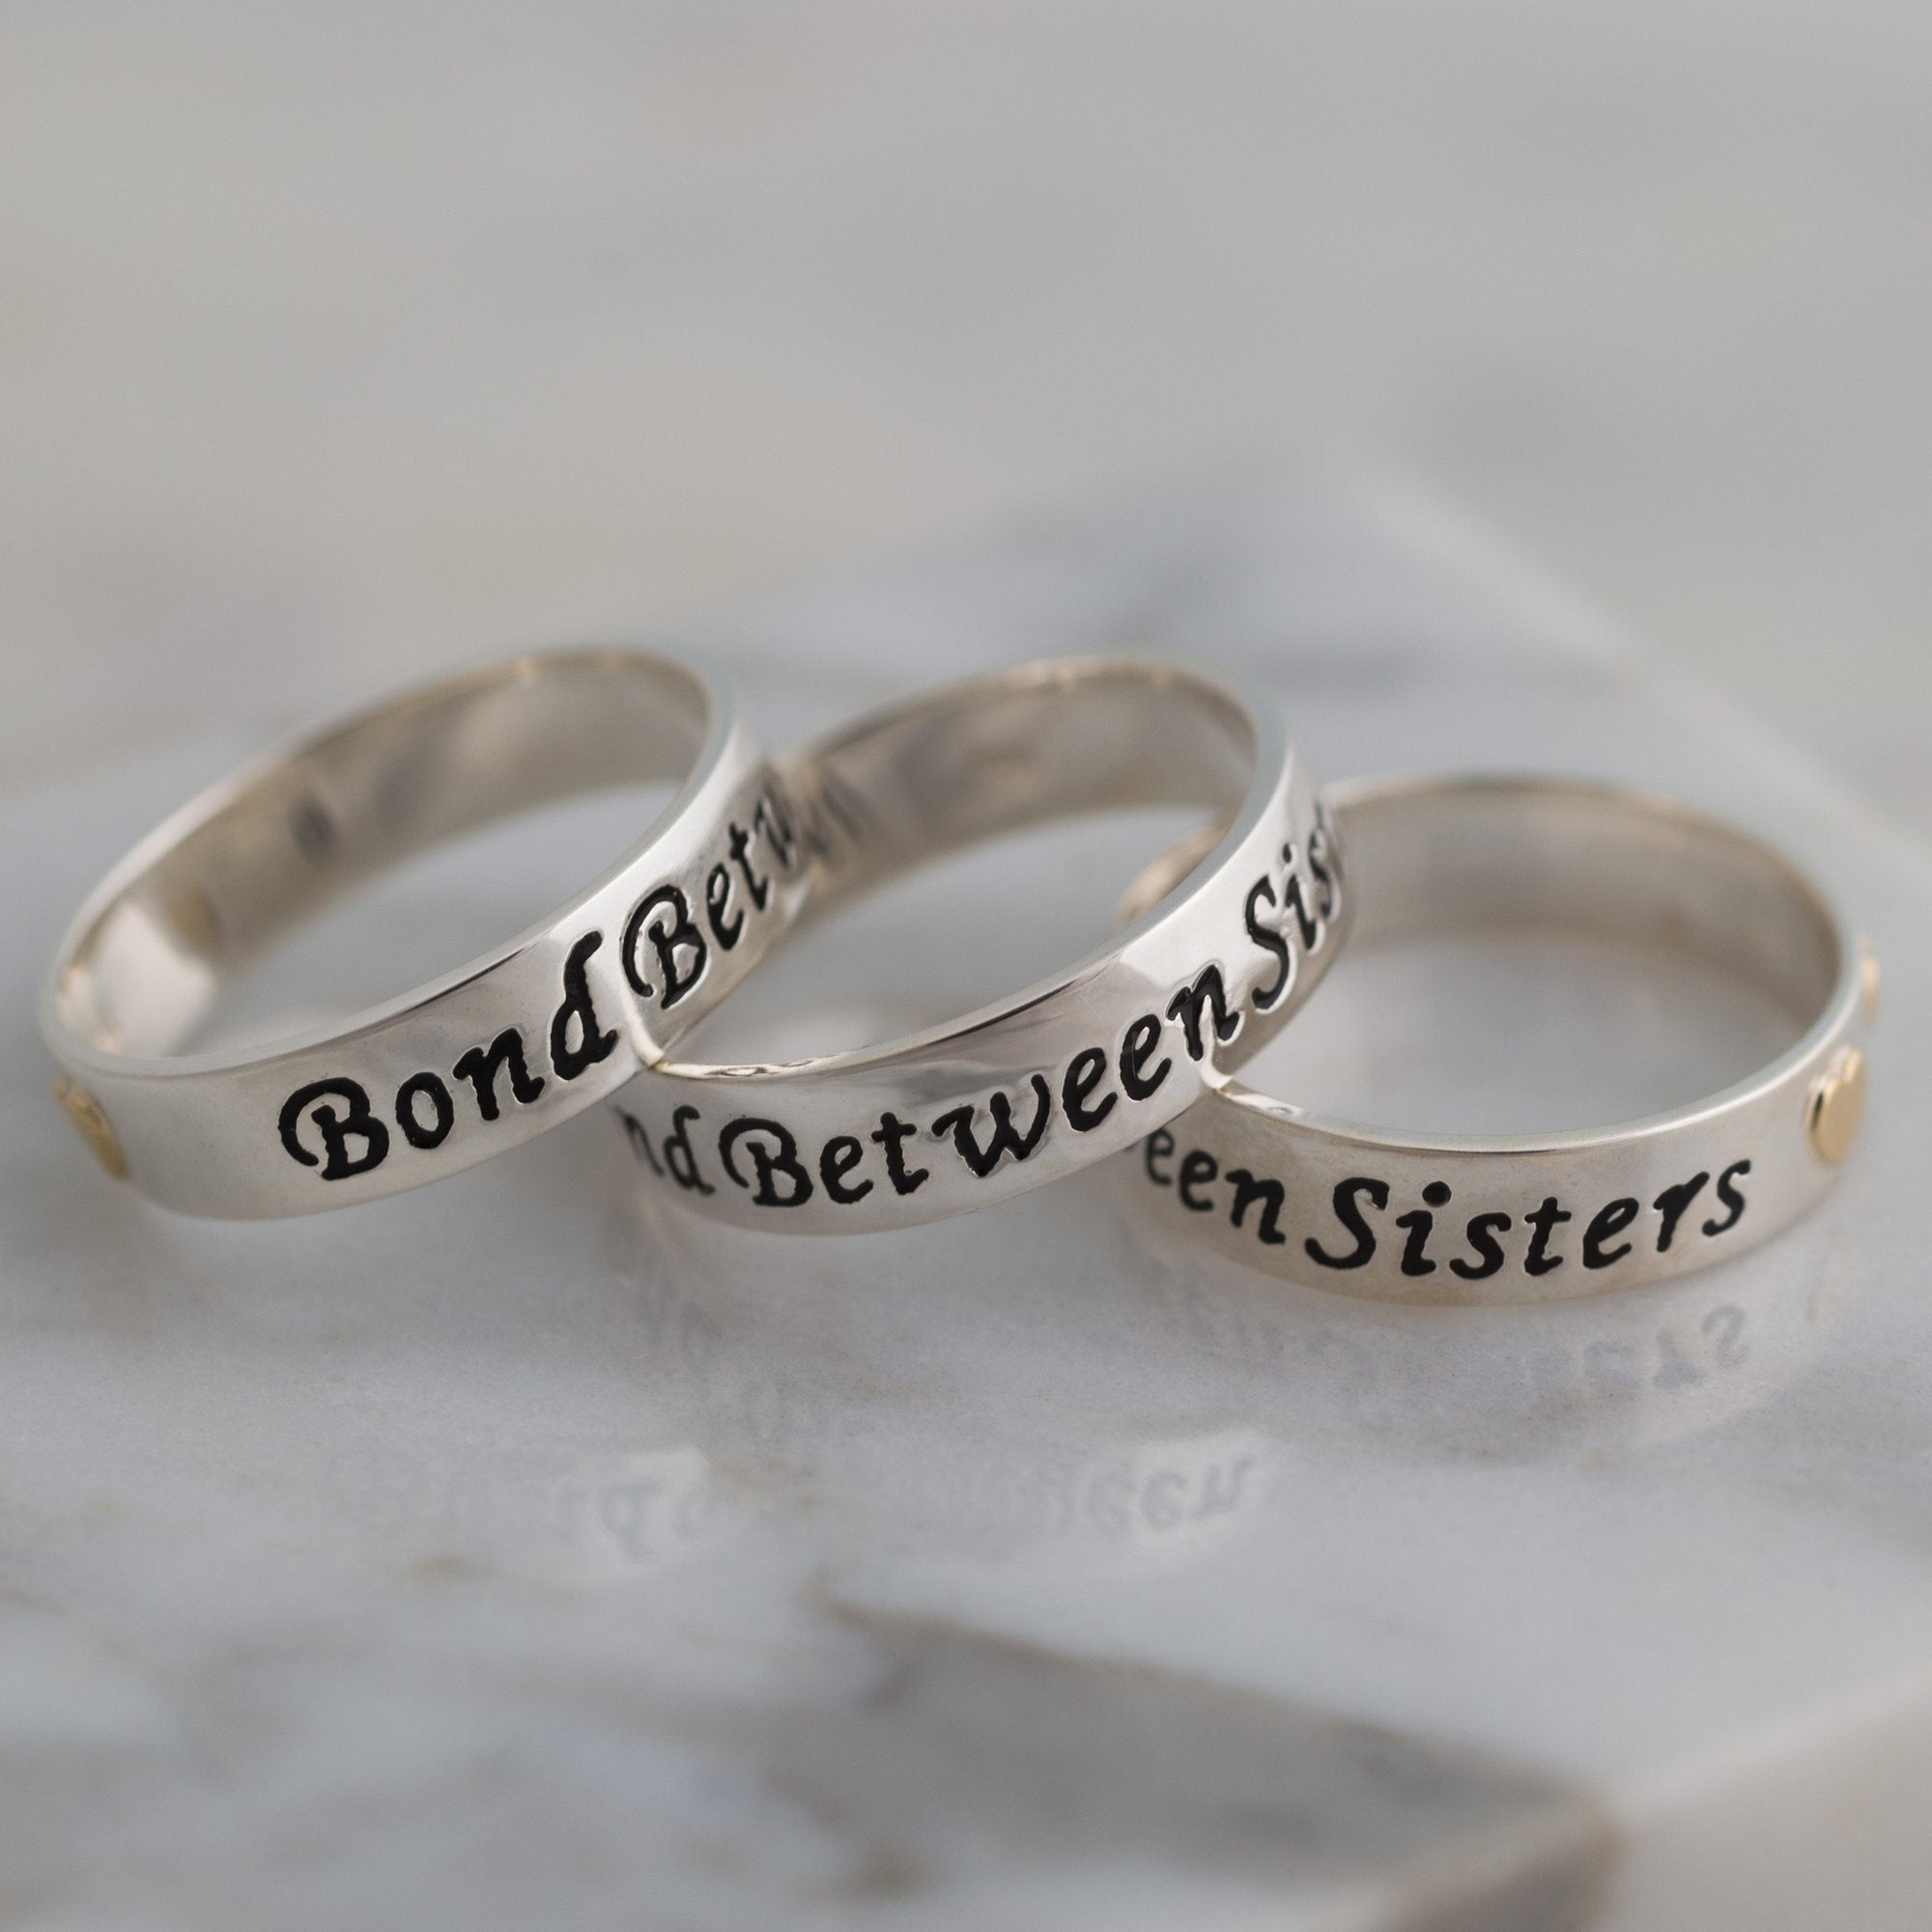 Bond Between Sisters Sterling Ring - 2 Sisters - 6